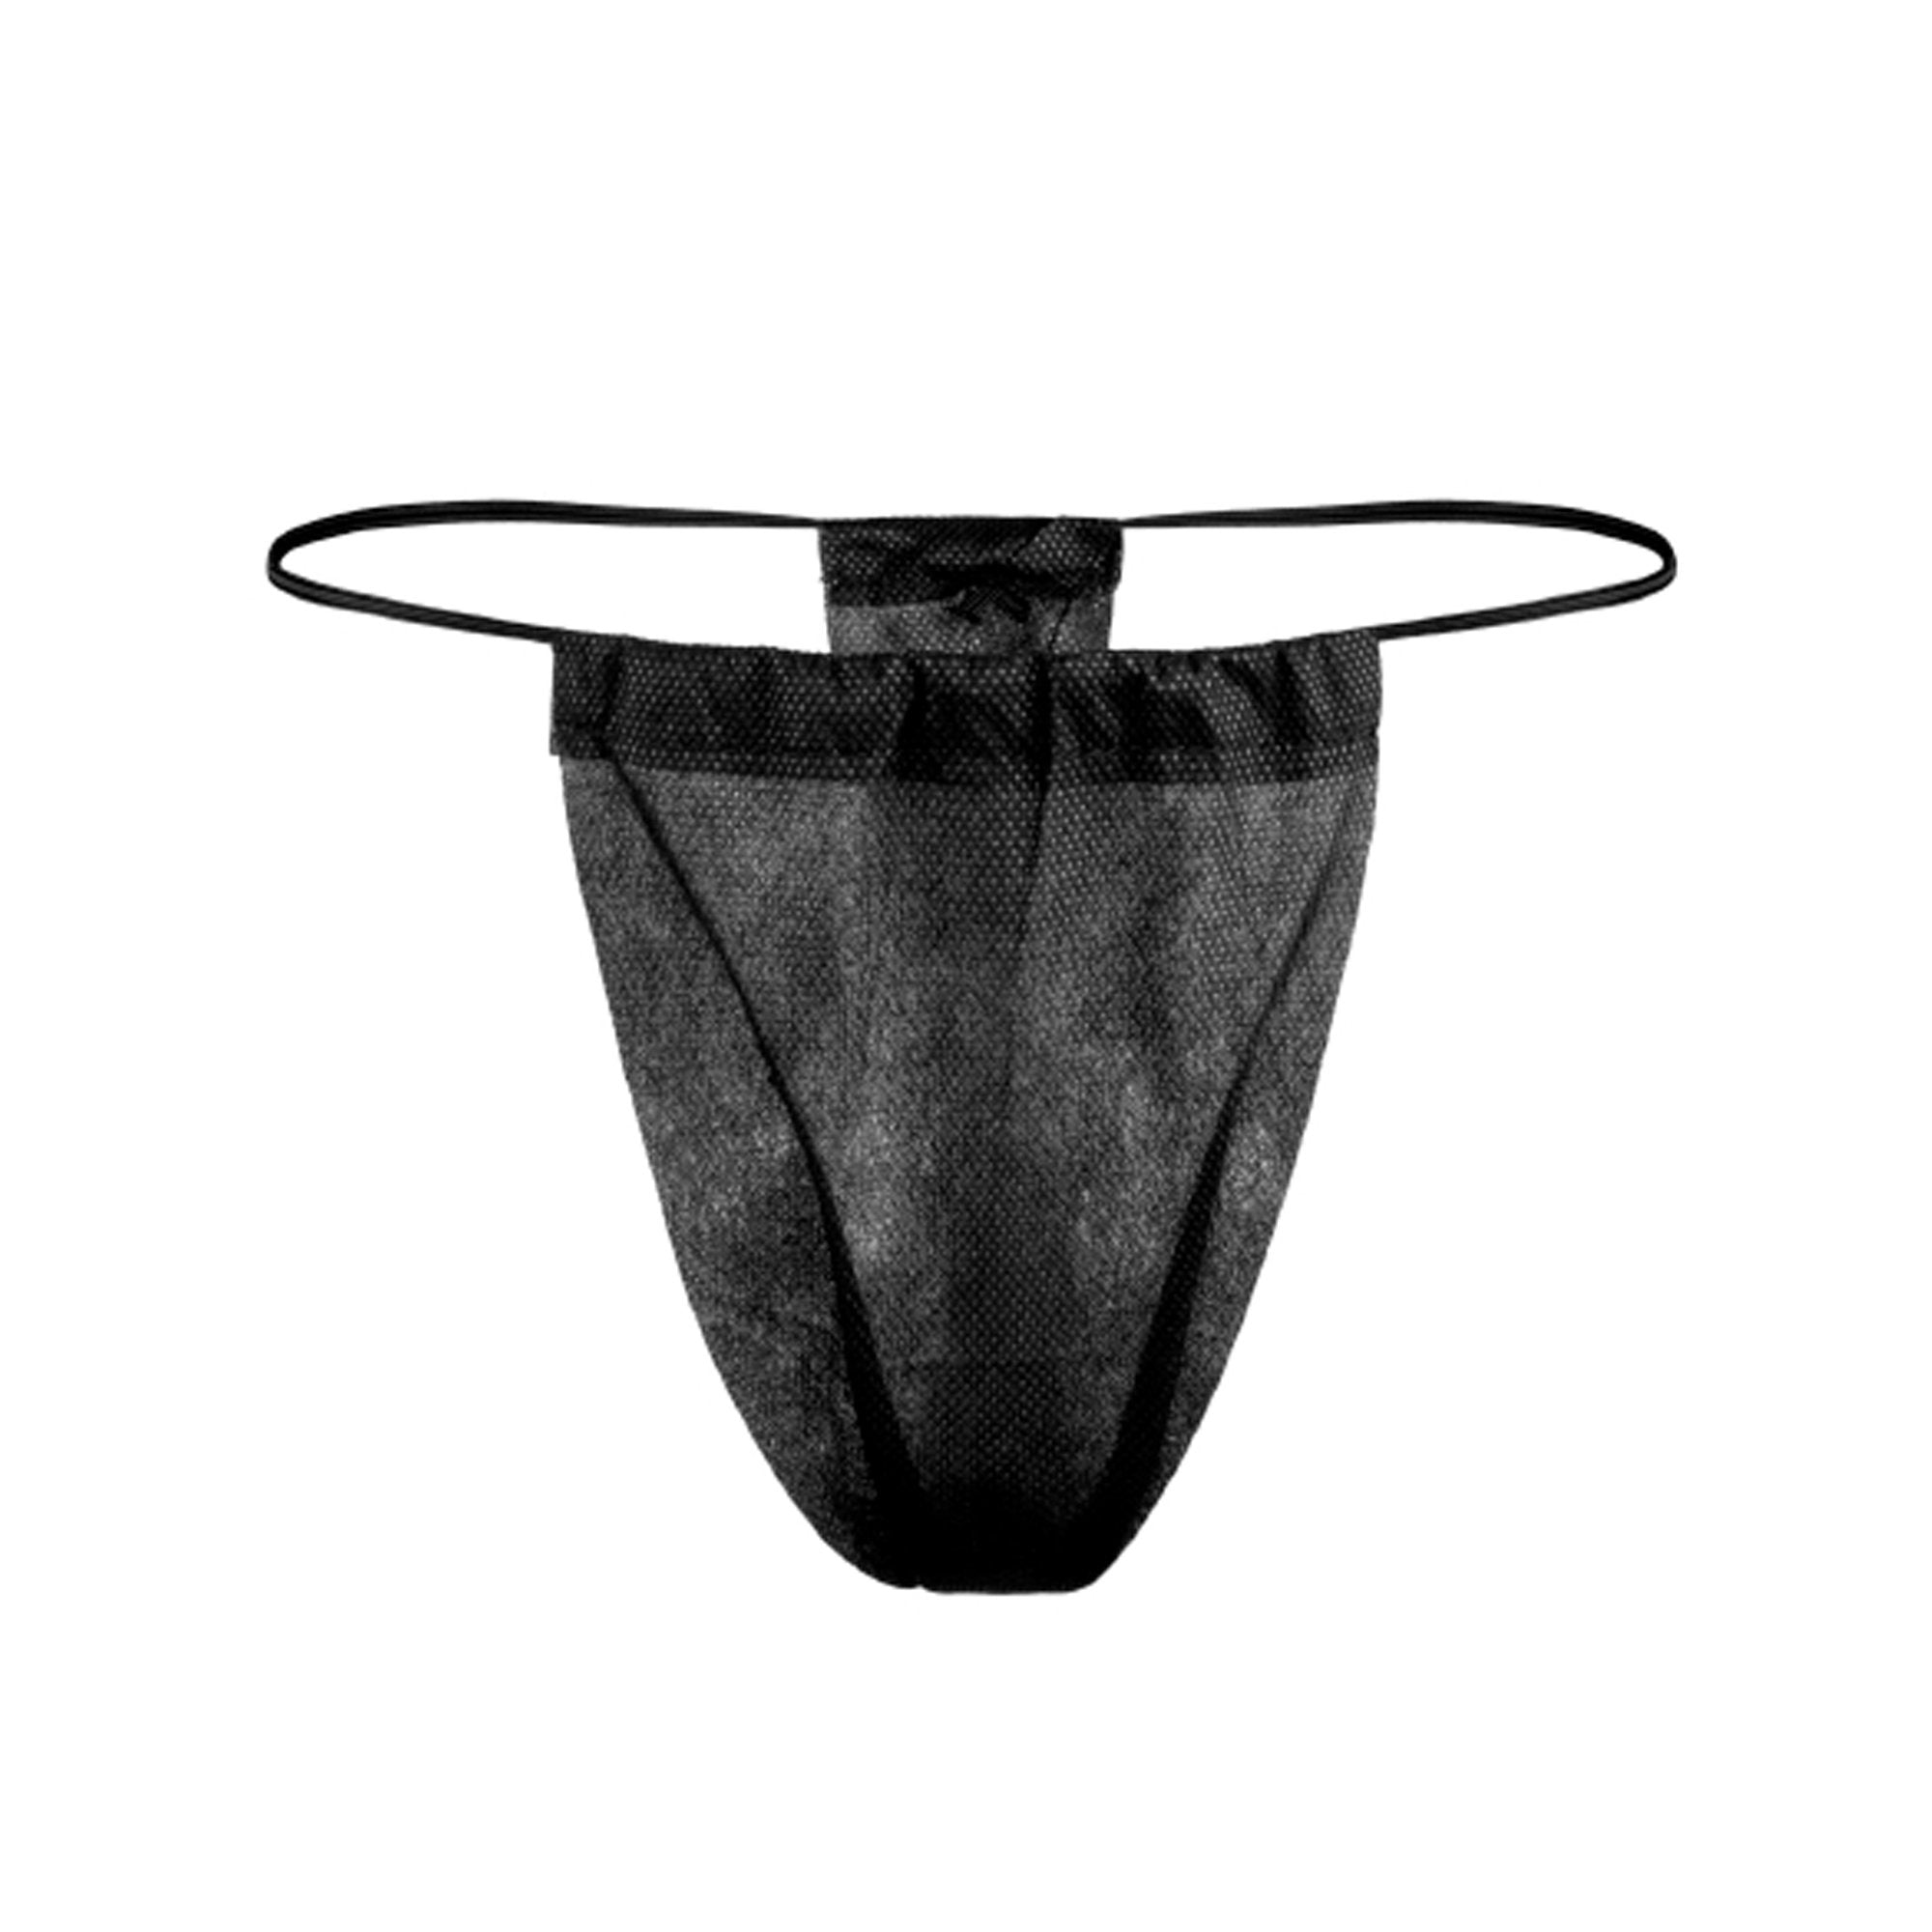 Reflections Thong Panty, Black -Box of 100